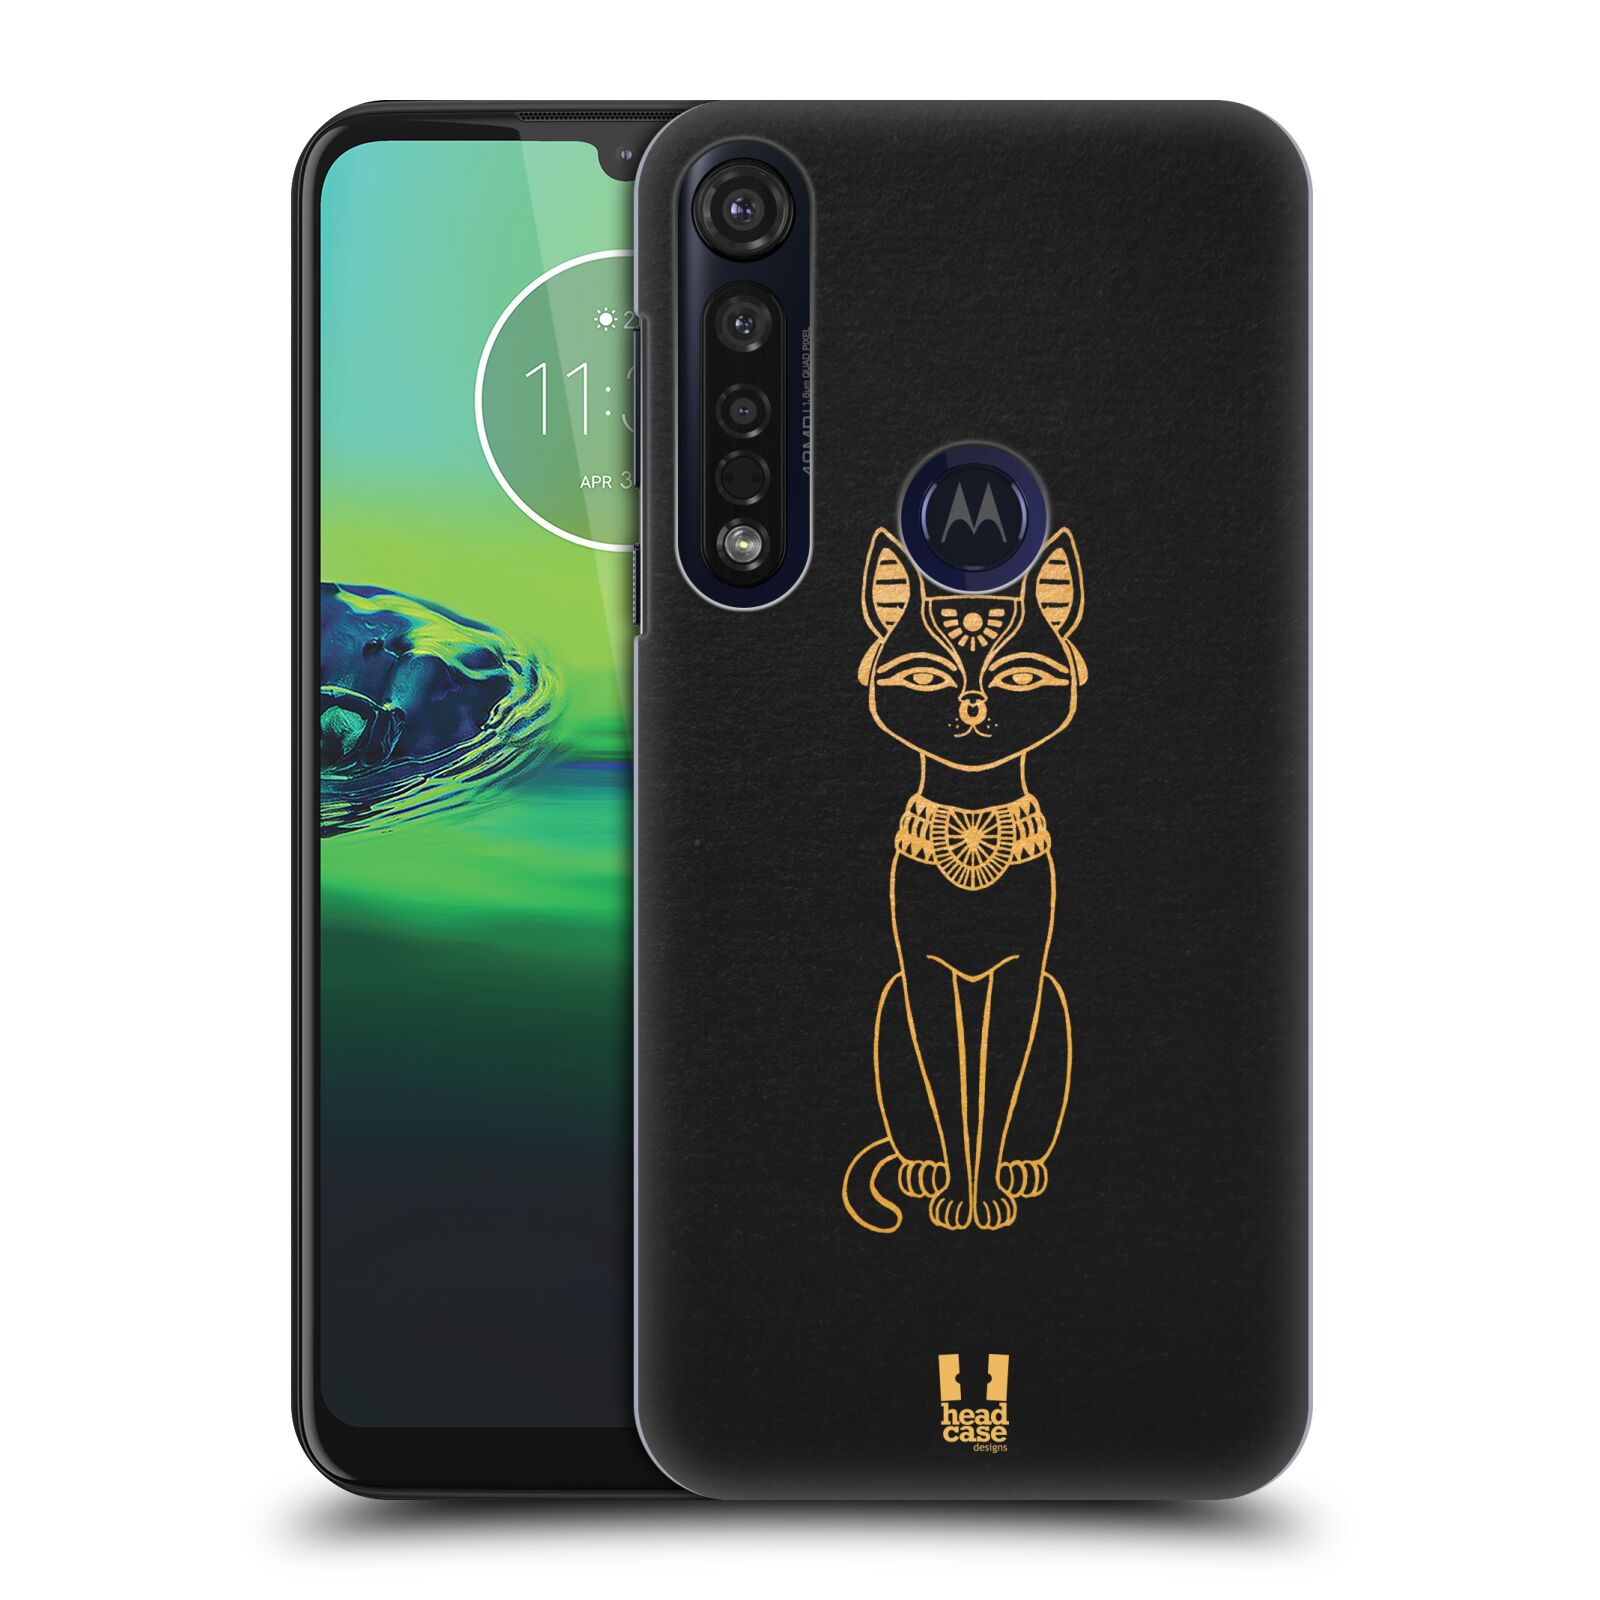 Pouzdro na mobil Motorola Moto G8 PLUS - HEAD CASE - vzor EGYPT zlatá a černá KOČKA